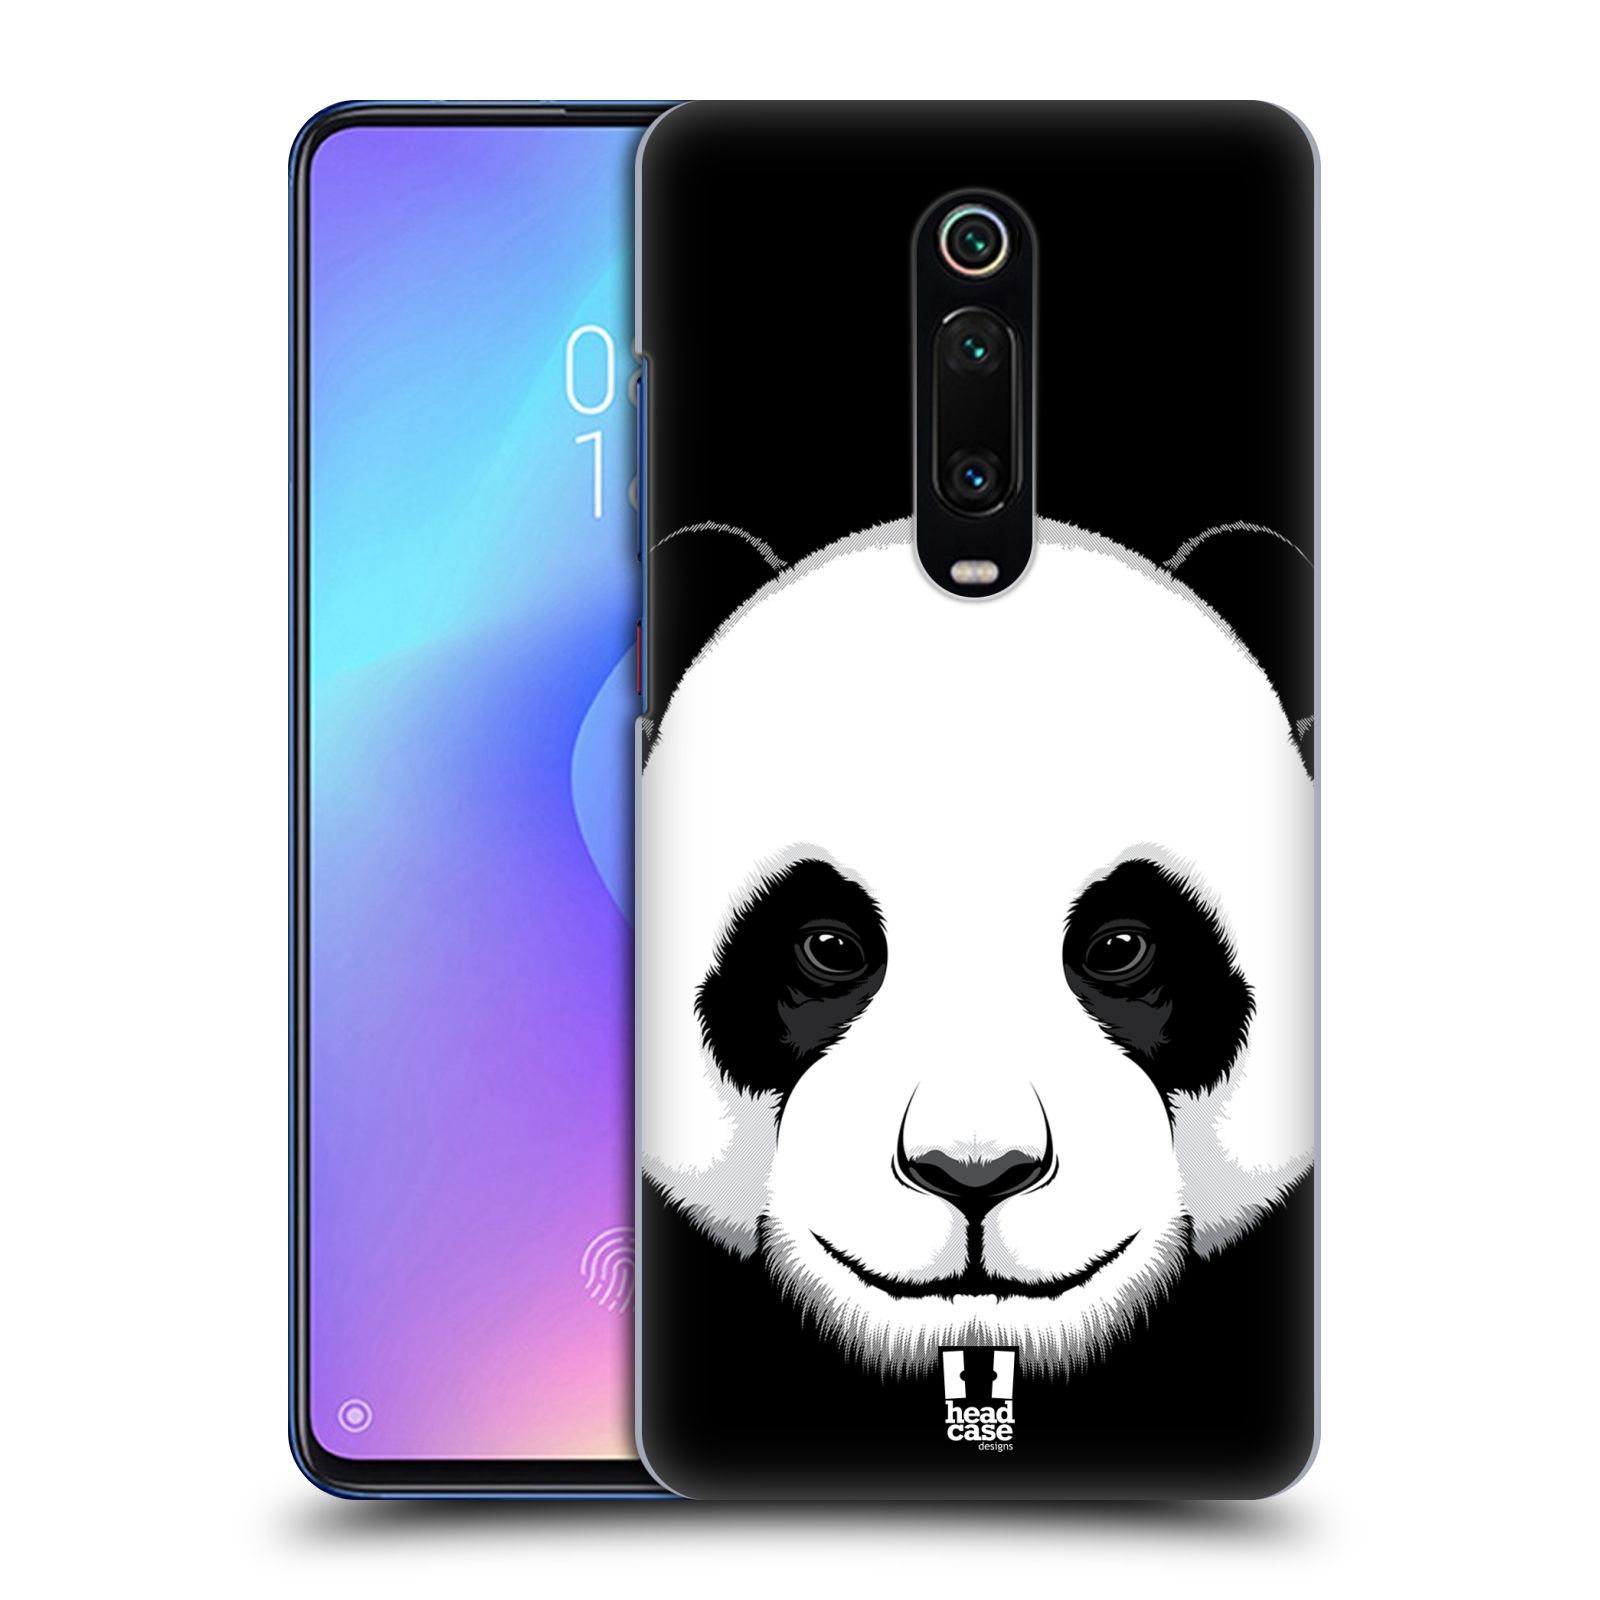 Plastový obal HEAD CASE na mobil Xiaomi Mi 9T vzor Zvíře kreslená tvář panda